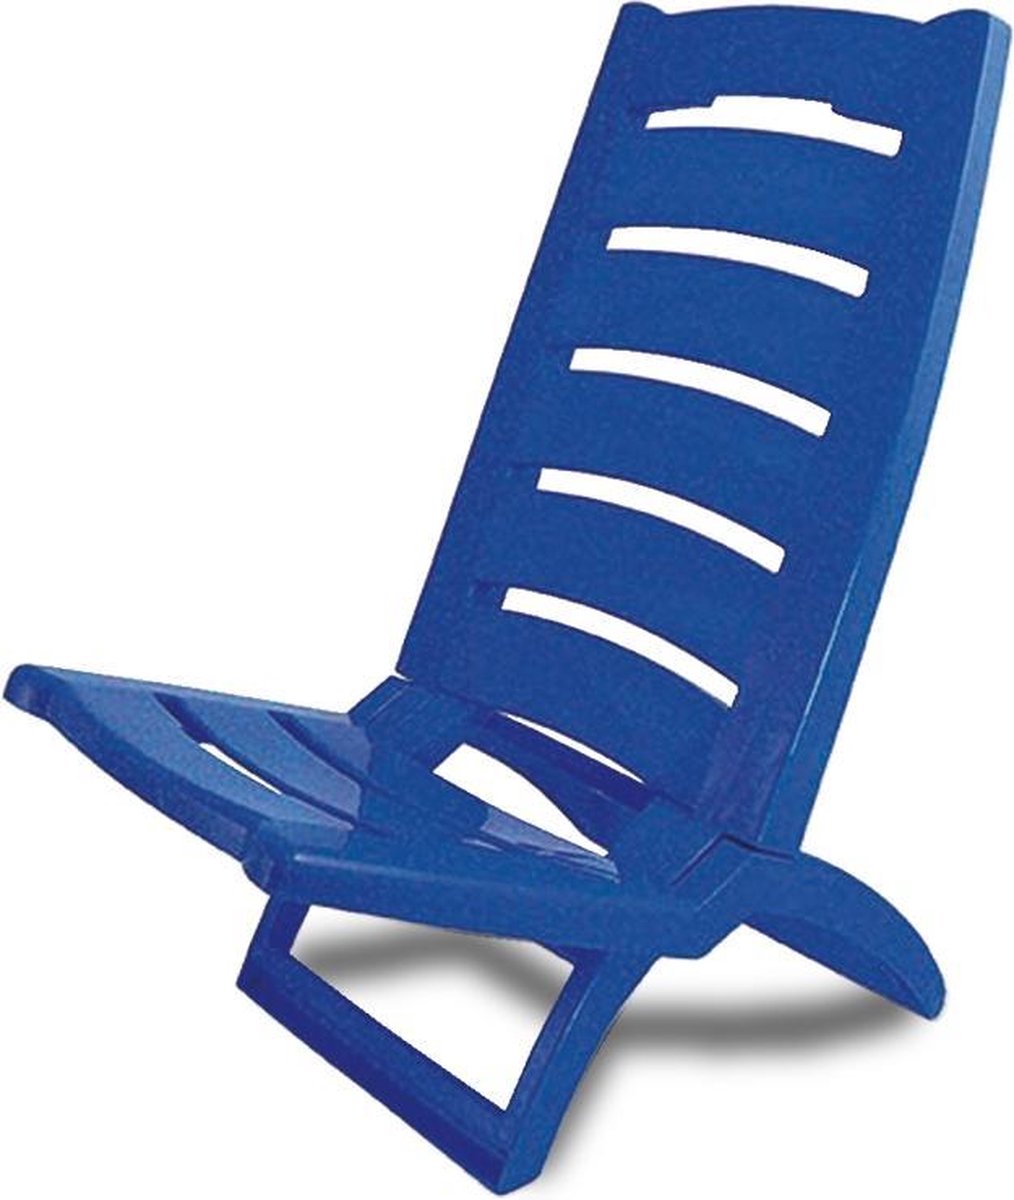 Adriatic Strandstoel kunststof opklapbaar 80x38cm blauw